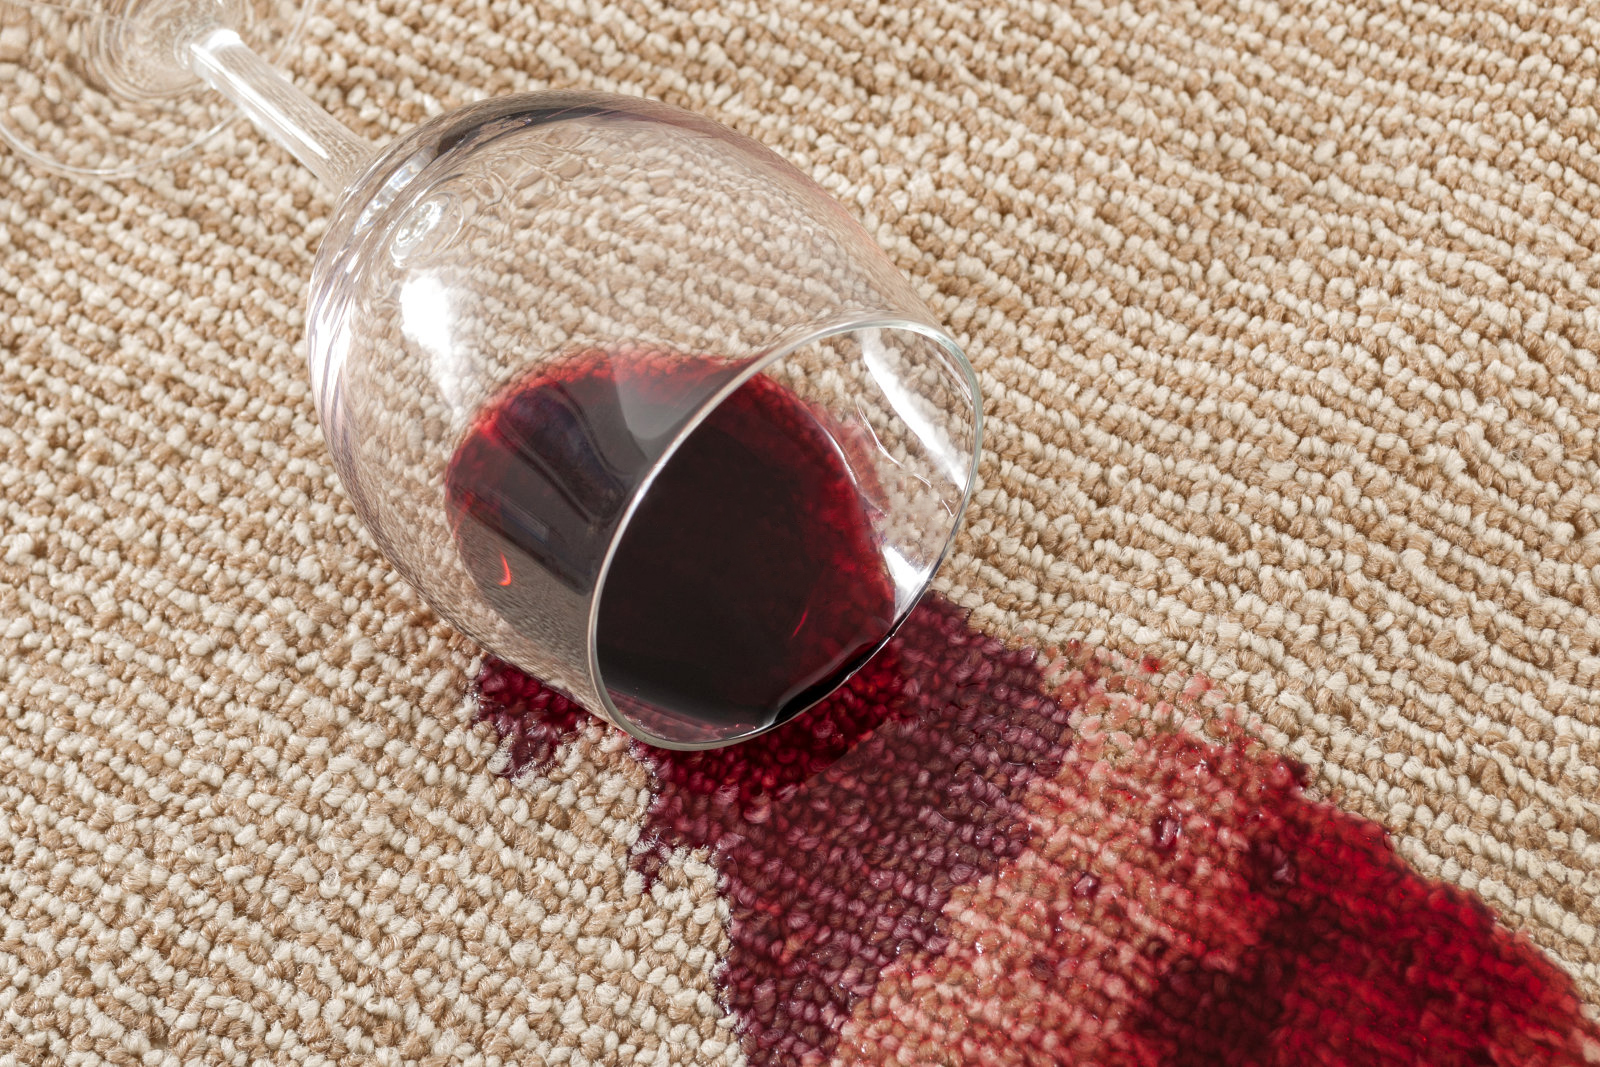 Концепция за домашна злополука и домашен инцидент с близък план на разлята чаша червено вино върху кафяв килим